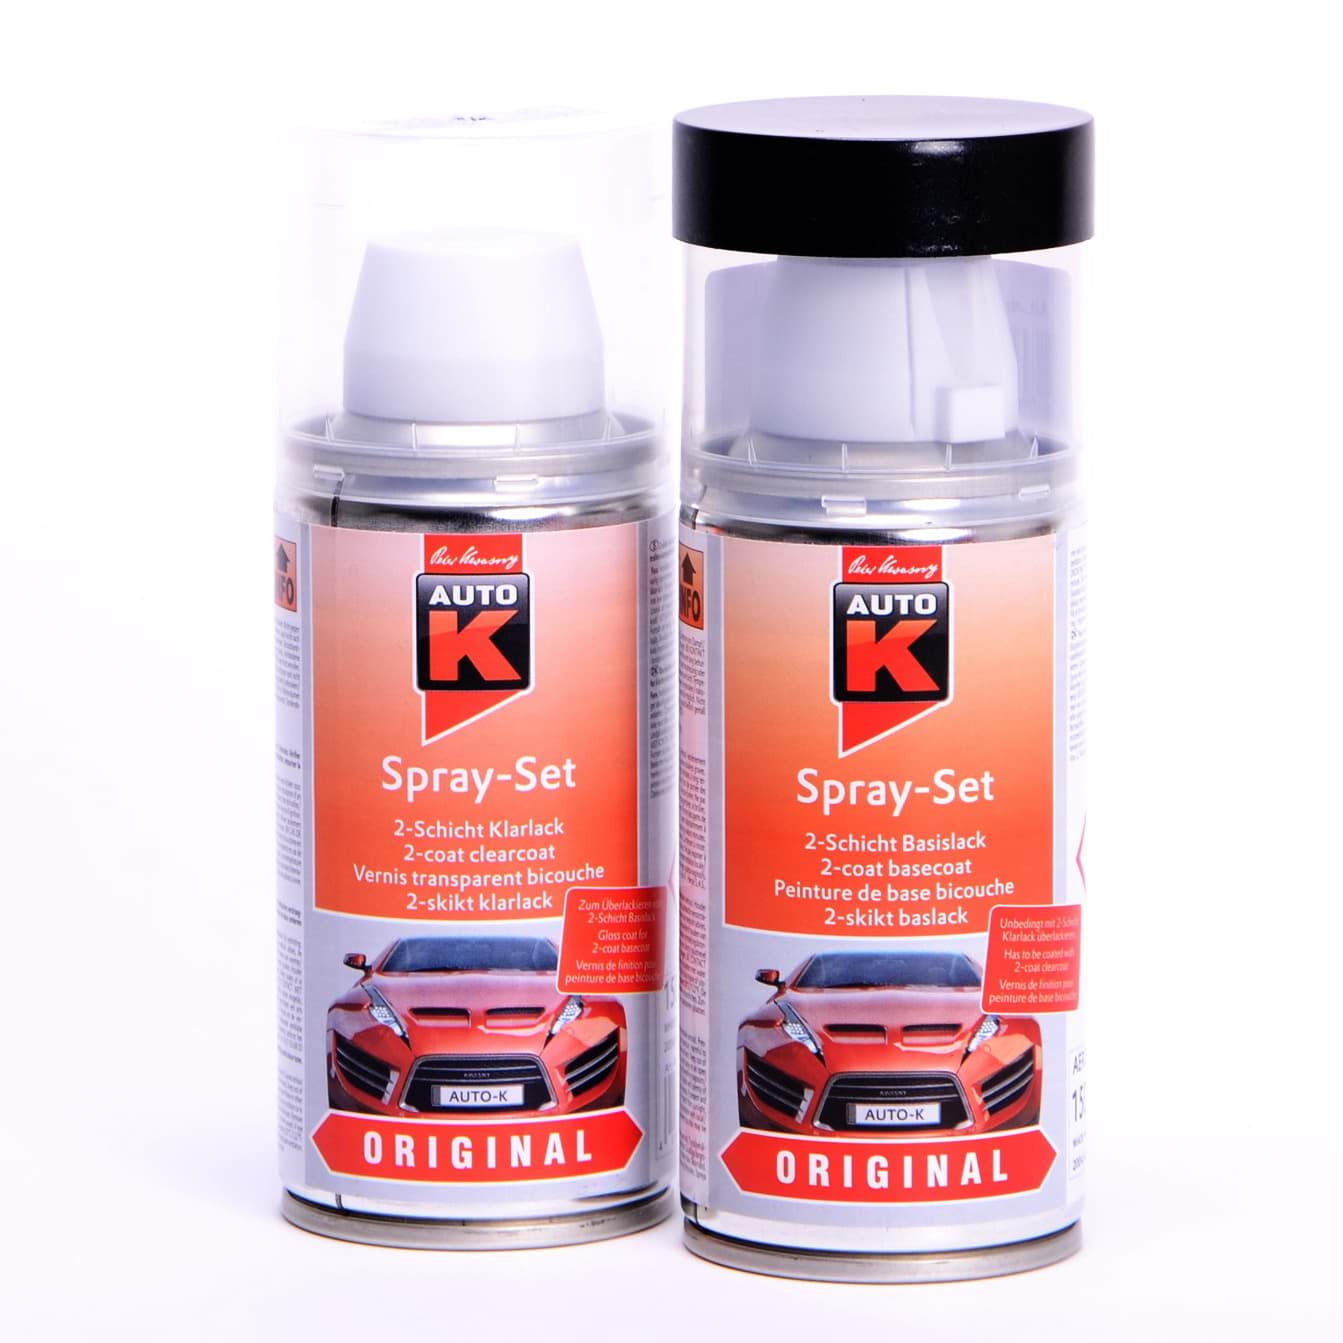 Afbeelding van Auto-K Spray-Set Autolack für Renault 608 Gris Tungstene met 43359